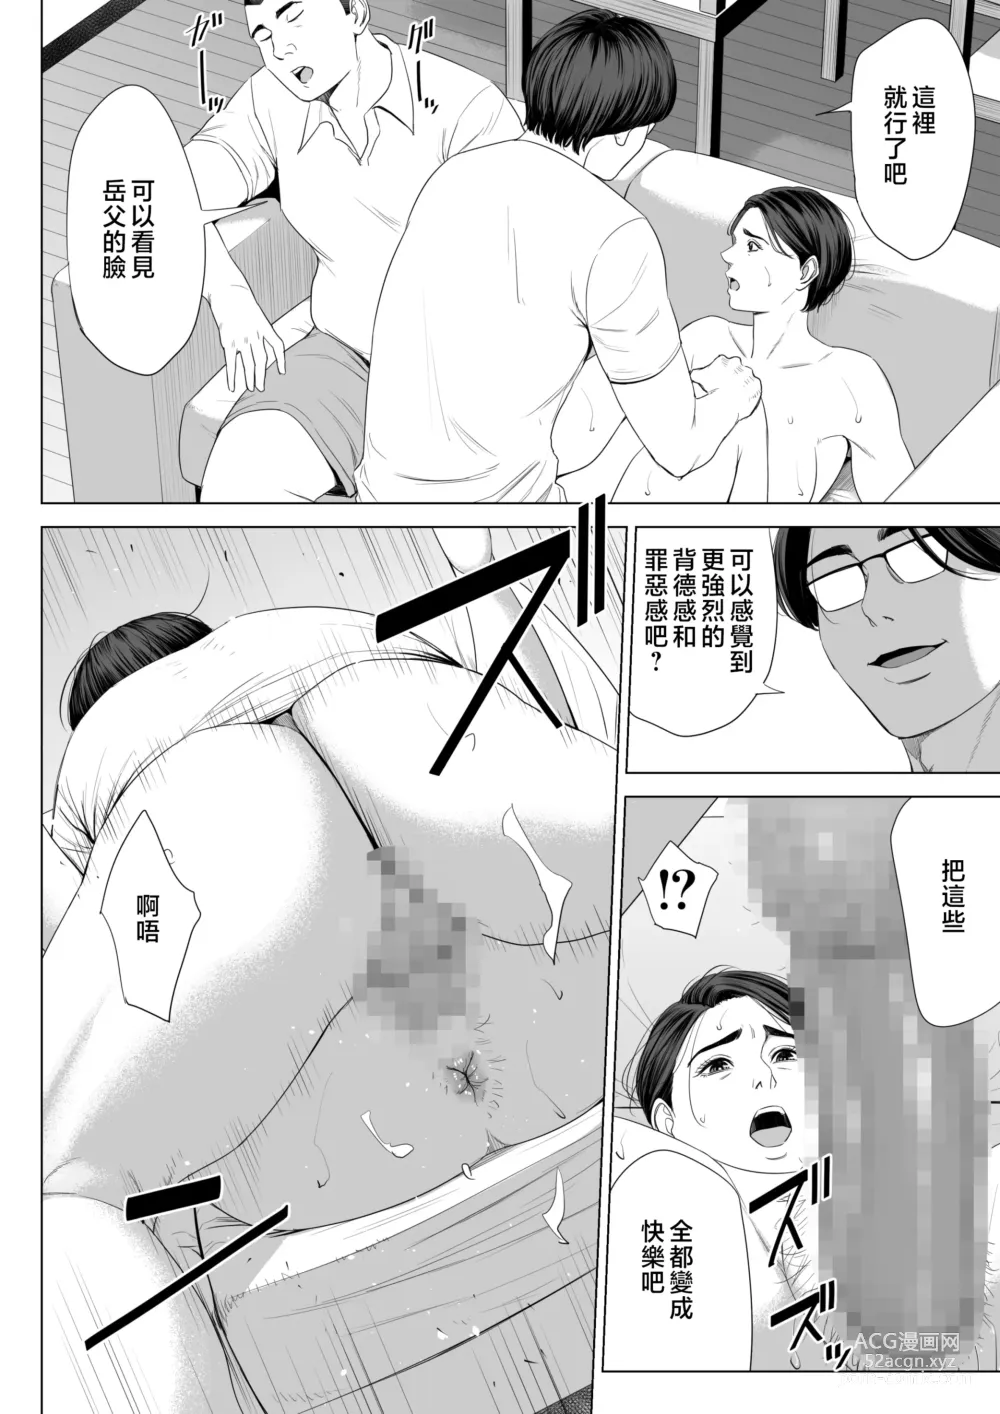 Page 71 of doujinshi Gibo no Tsukaeru Karada.